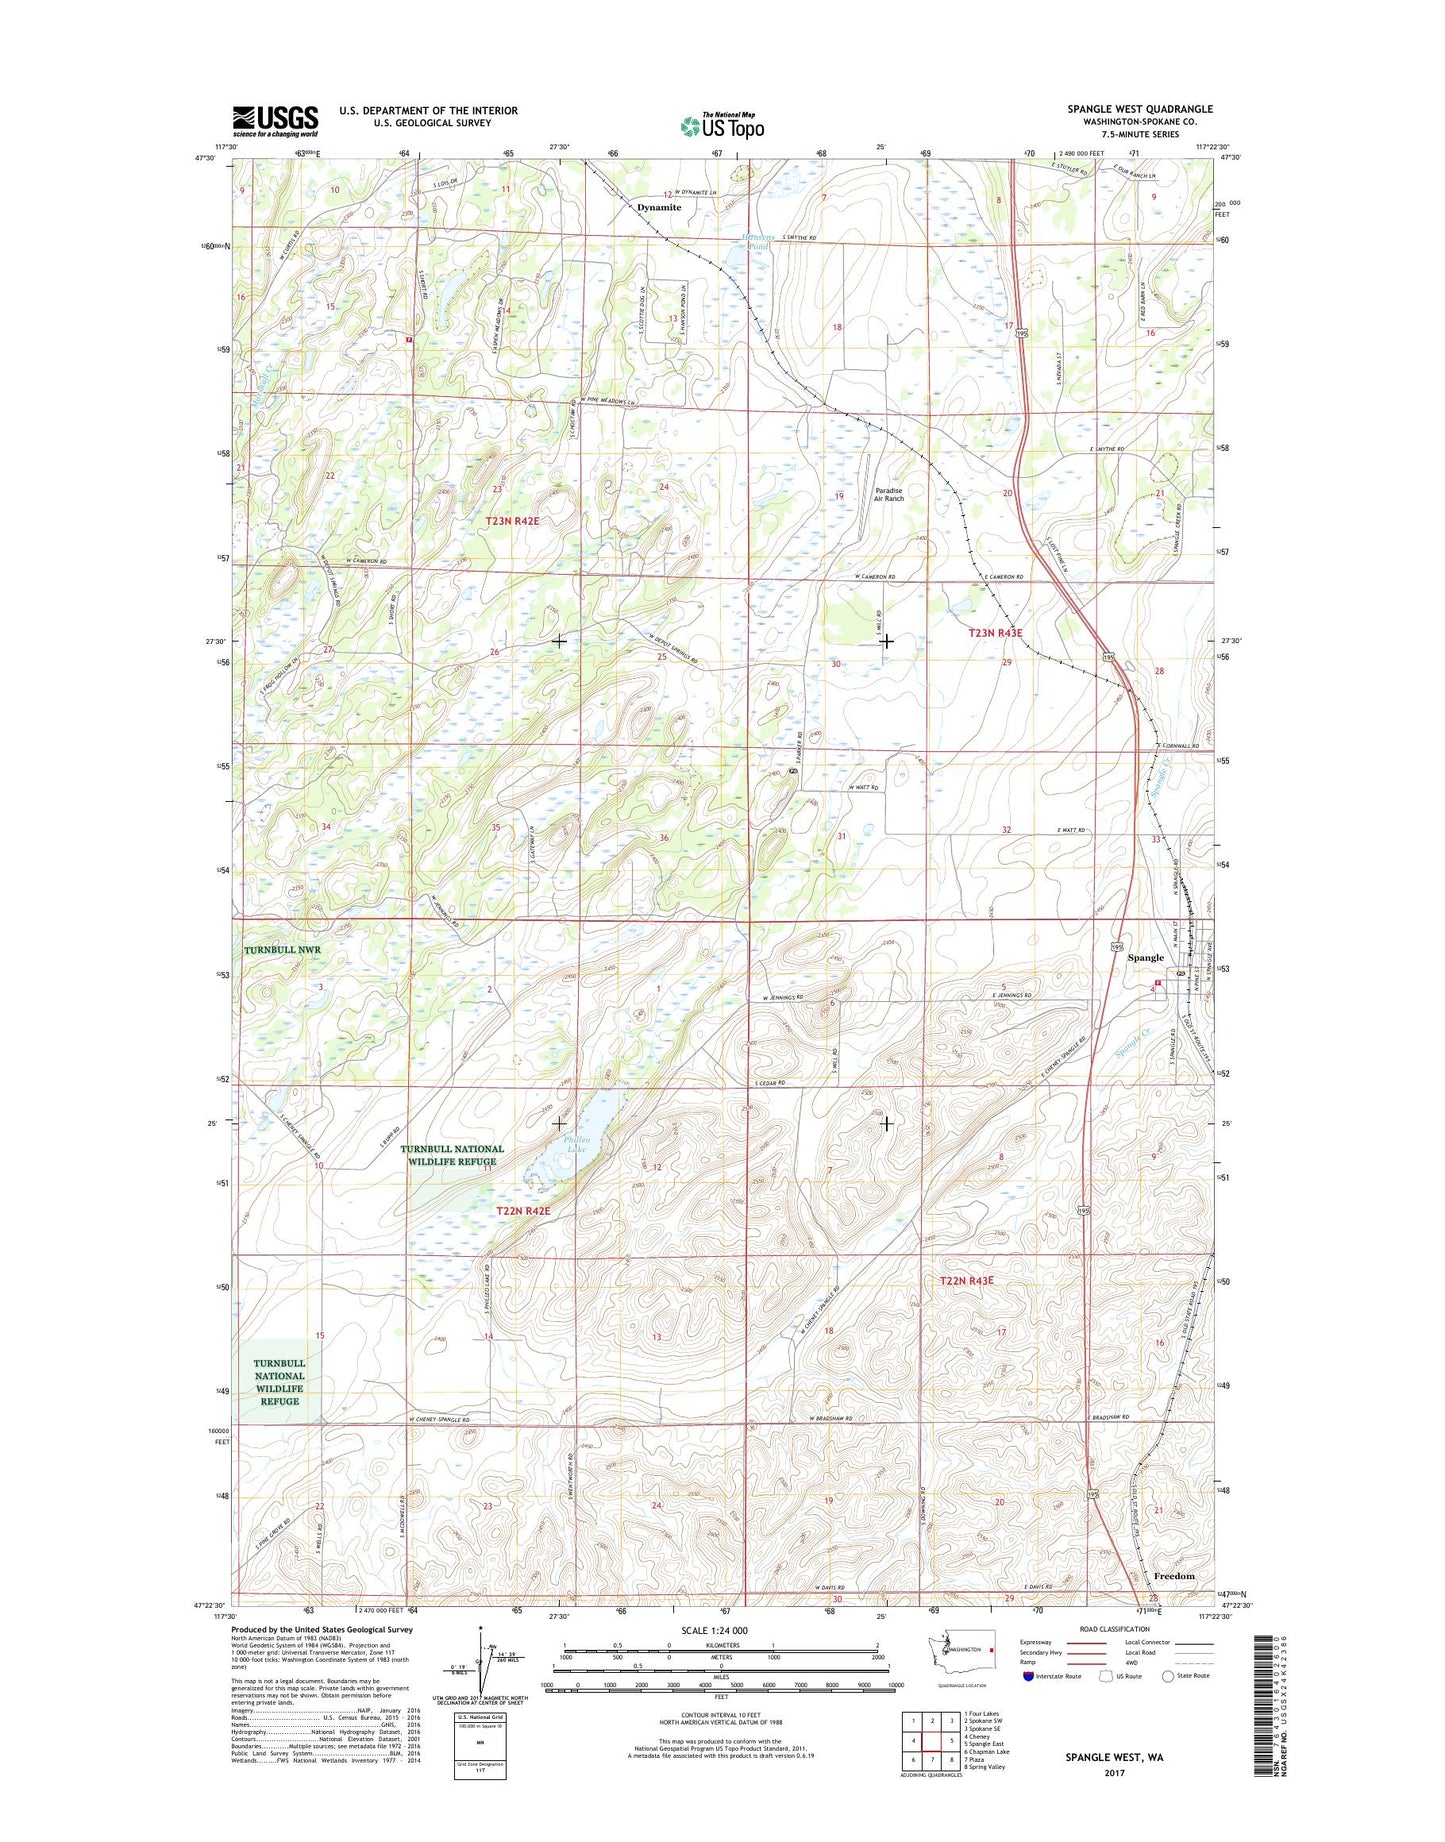 Spangle West Washington US Topo Map Image